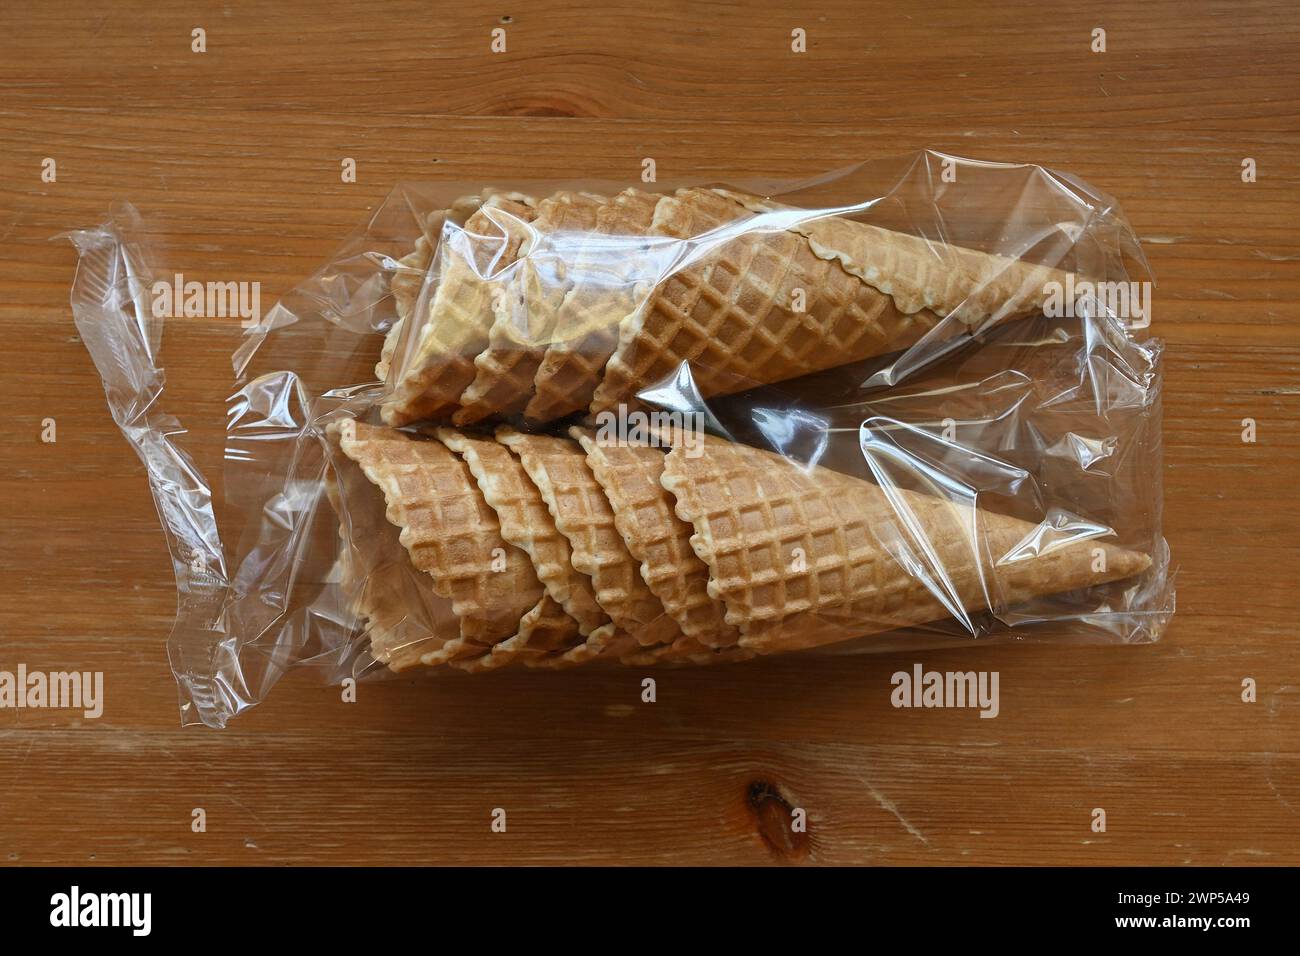 Waffelkegel in Plastikverpackung auf einem Holztisch, fertig mit köstlichem Eis gefüllt Stockfoto